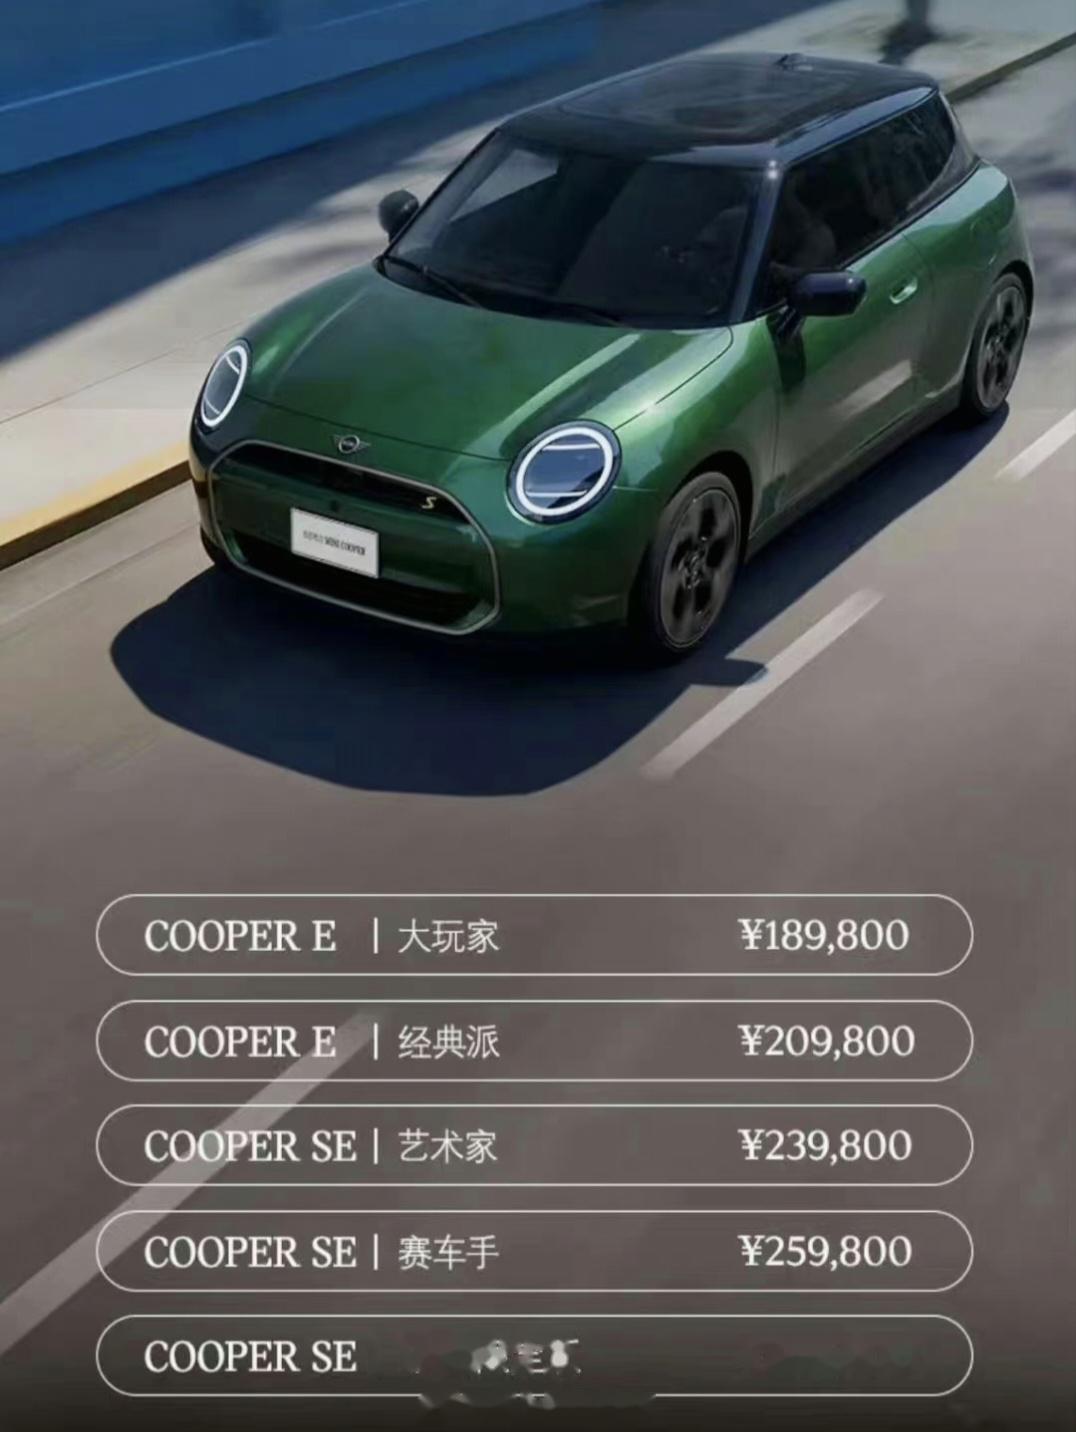 看到国产mini cooper s 的正式售价,才知道极氪汽车